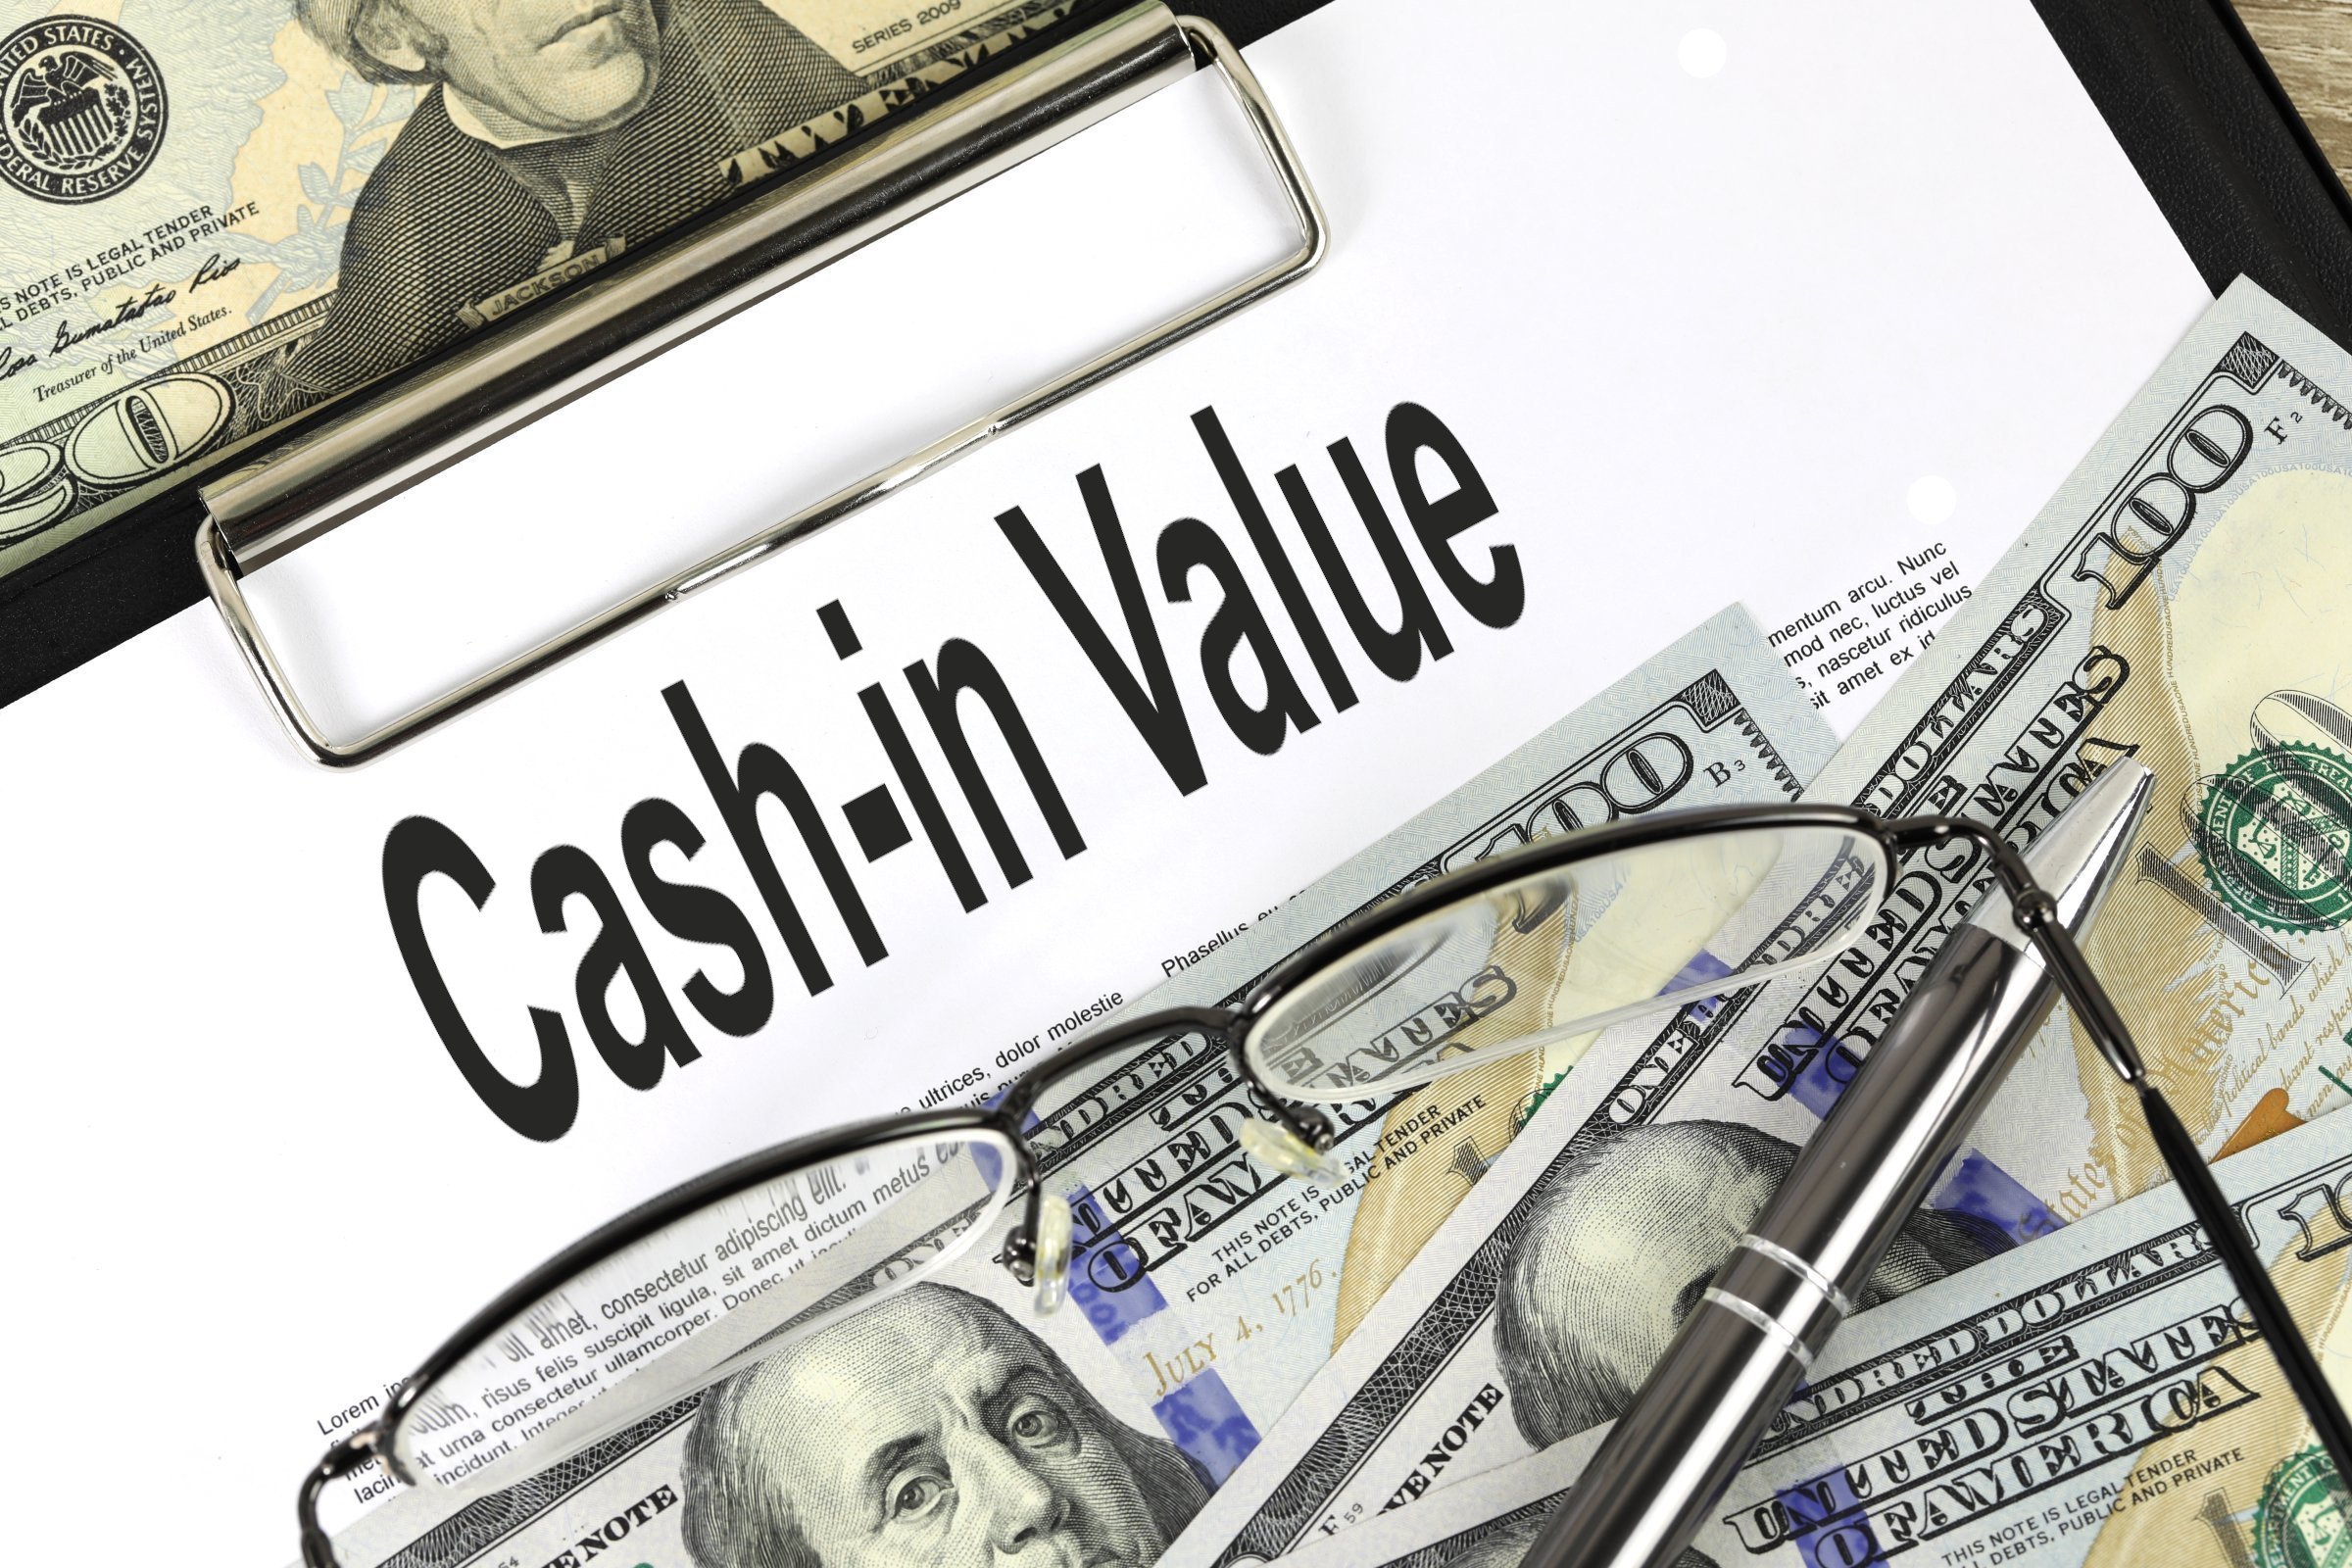 cash in value